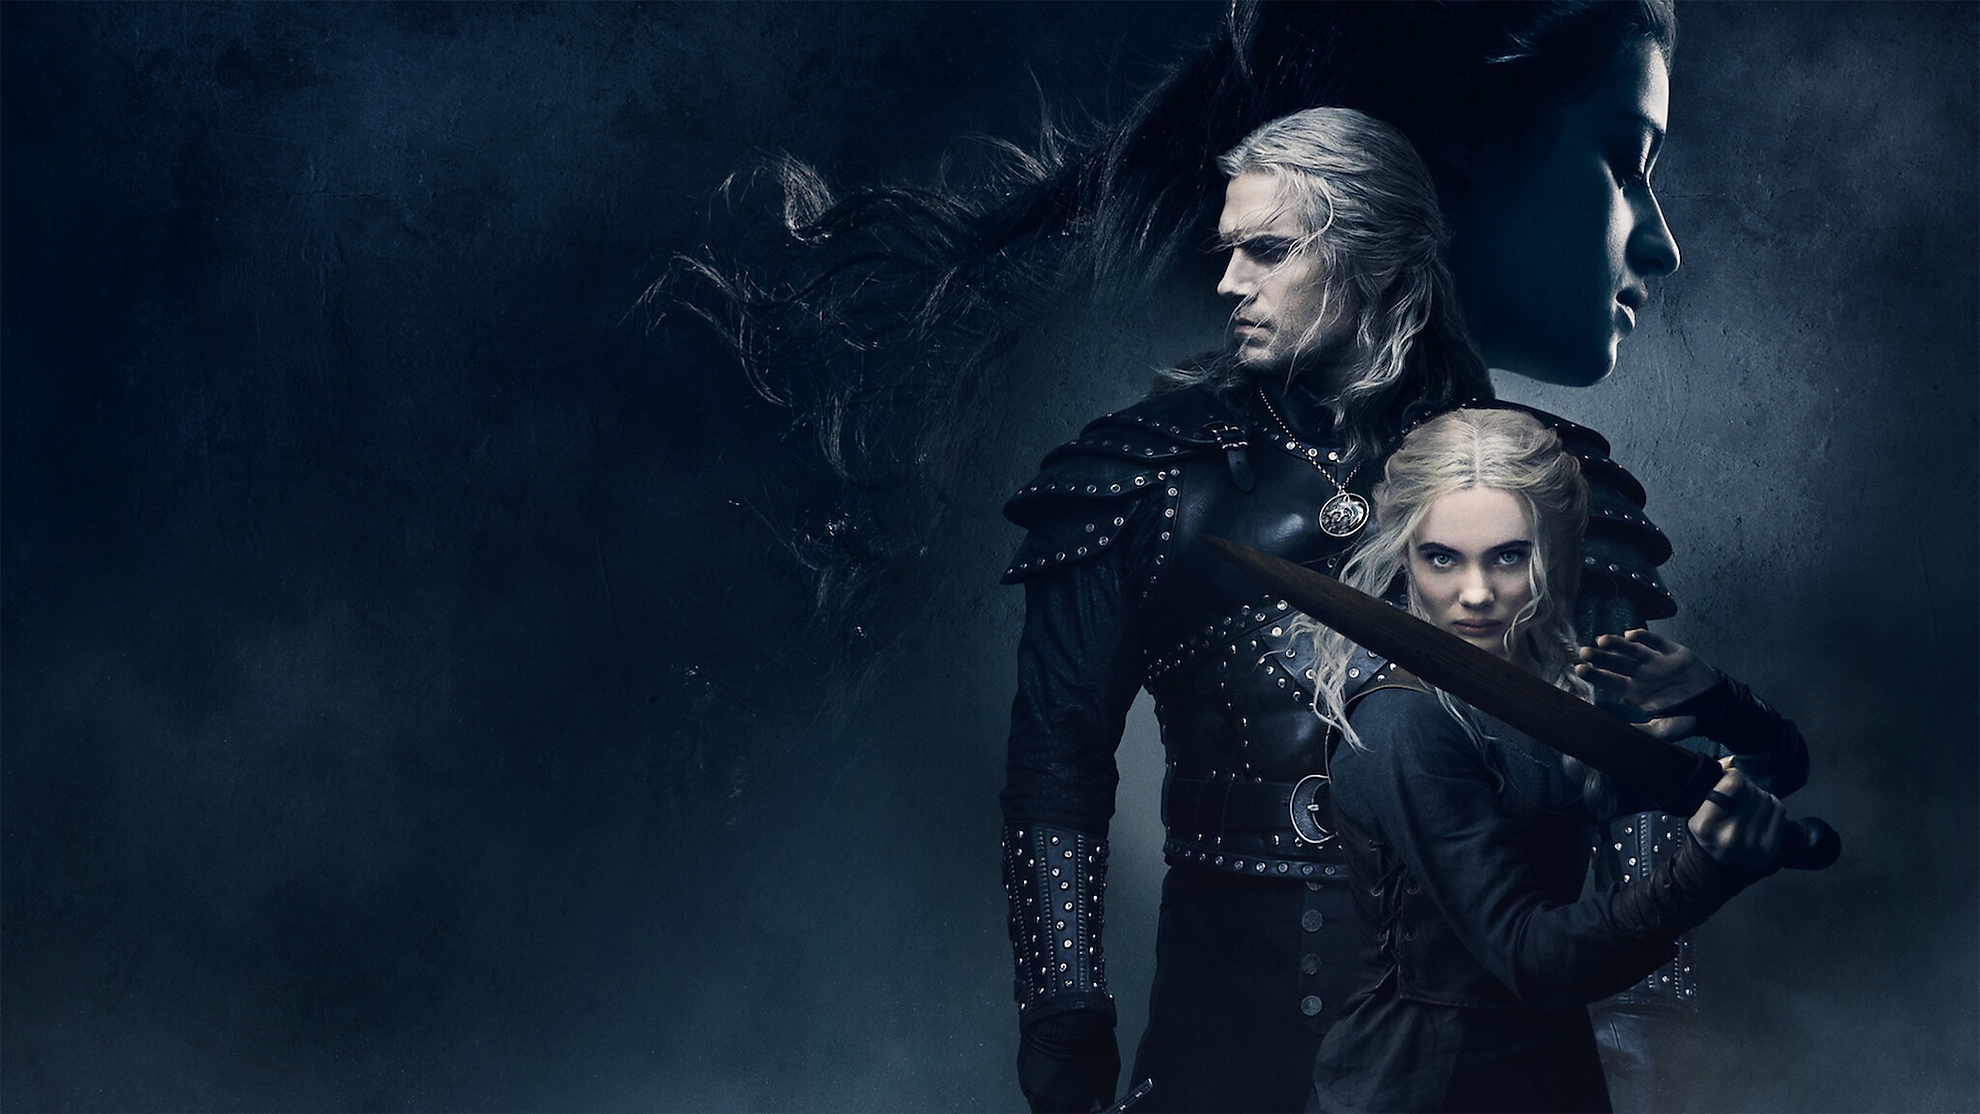 Bastidores de The Witcher, com Henry Cavill interpretando Geralt de Rívia